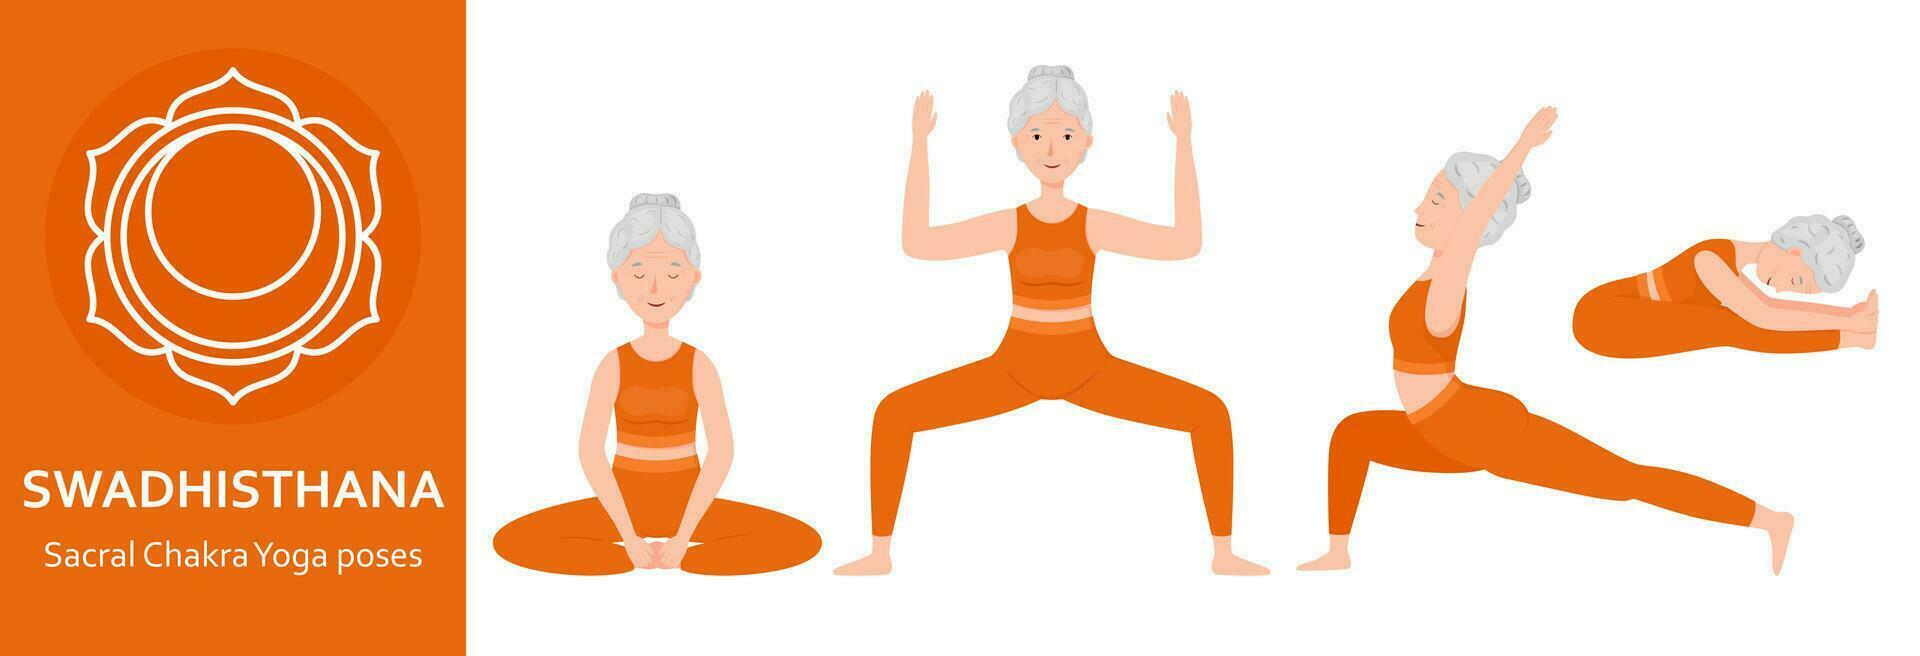 sacrale chakra yoga pose. anziano donna praticante swadhisthana chakra yoga asana. salutare stile di vita. piatto cartone animato carattere. vettore illustrazione